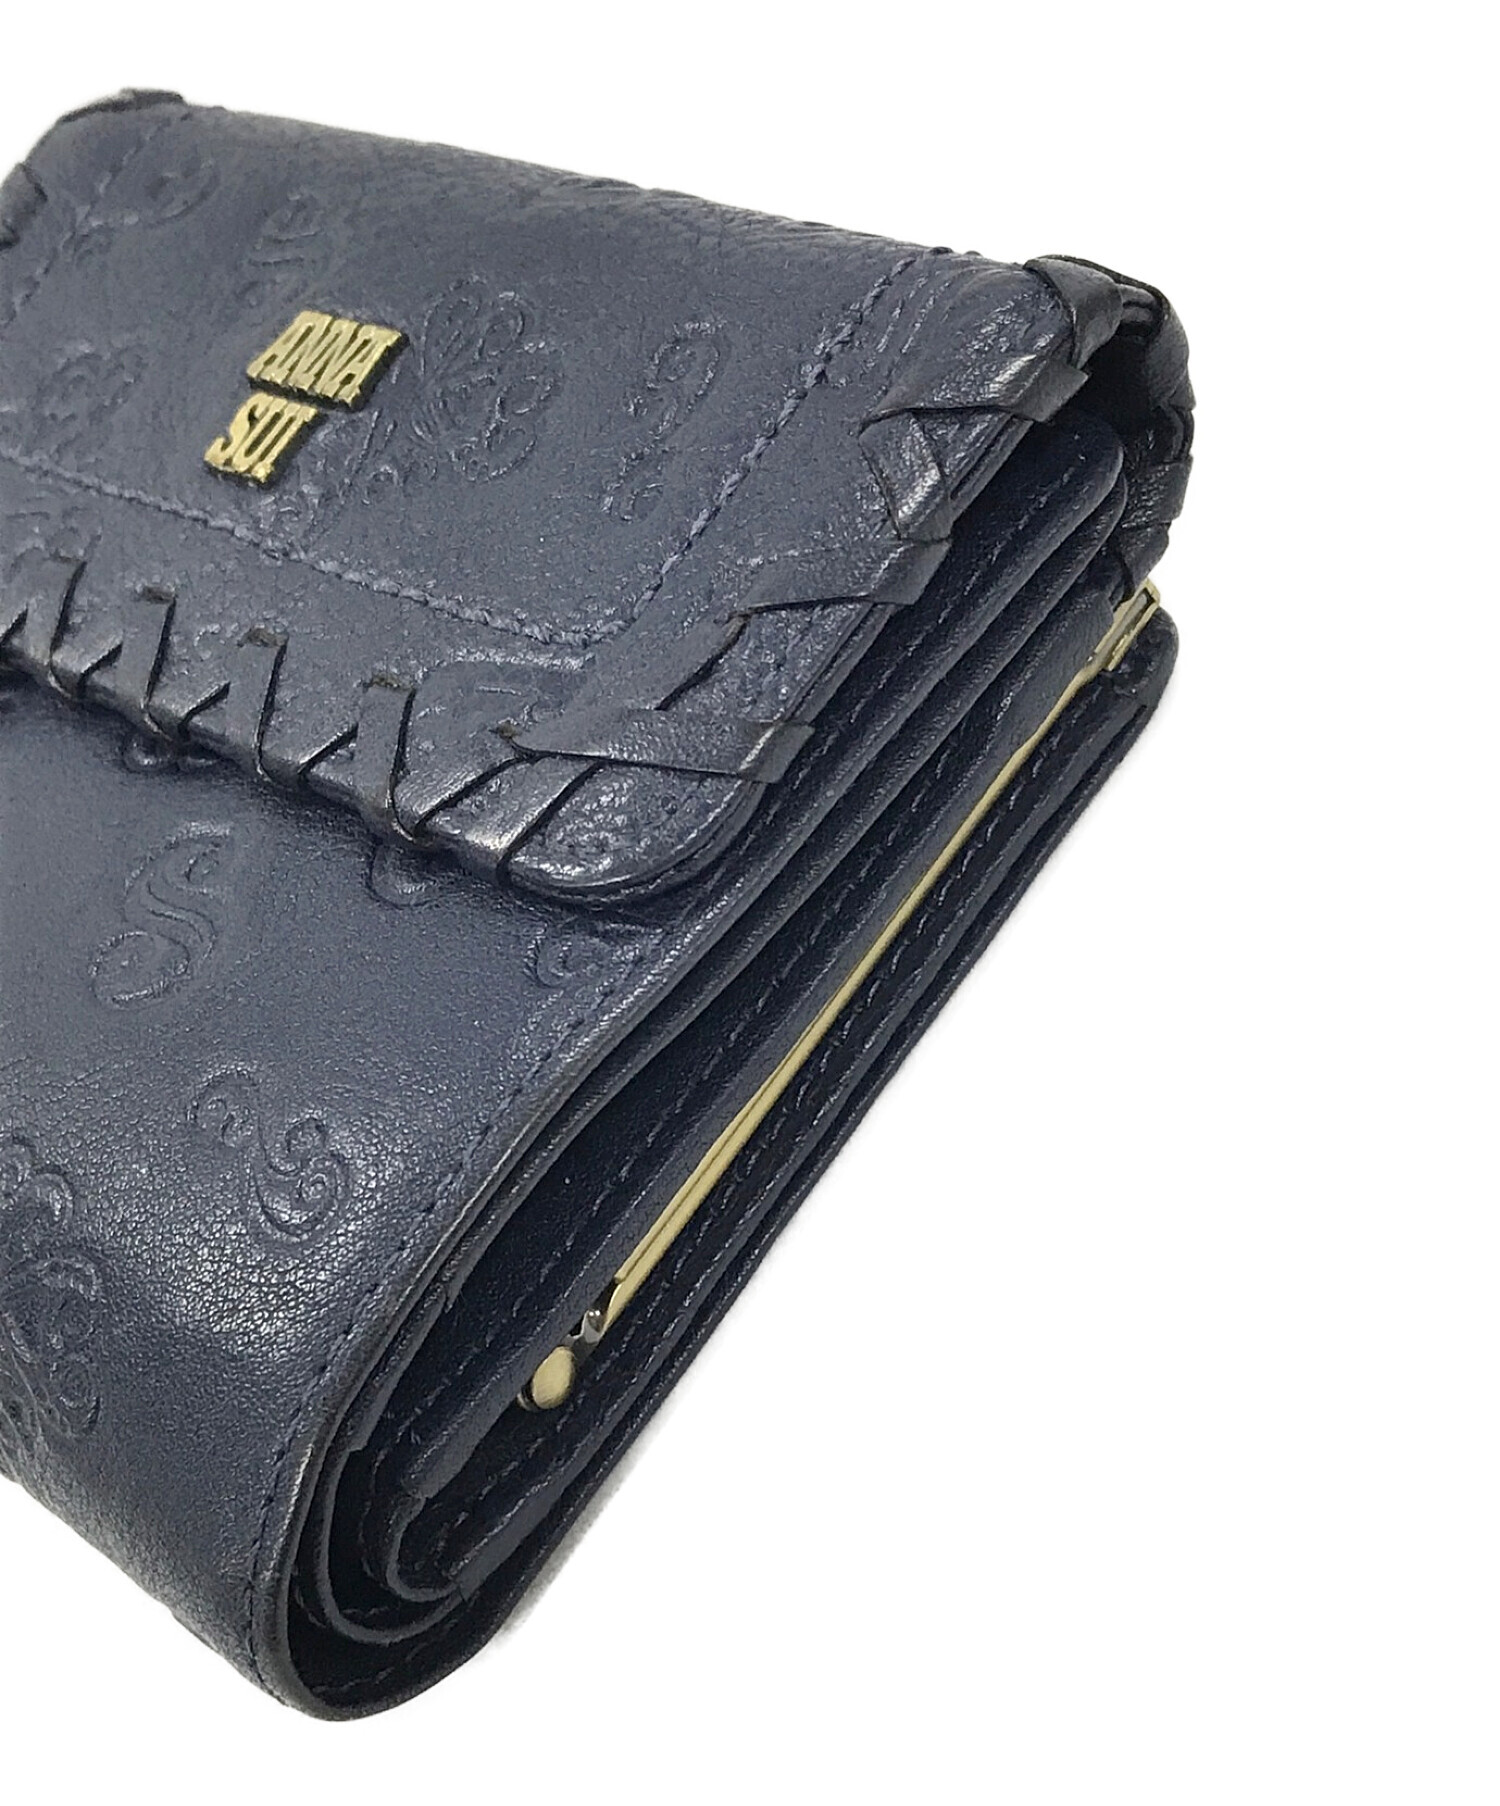 ANNASUI (アナスイ) がま口2つ折り財布 サイズ:実寸サイズにてご確認ください。